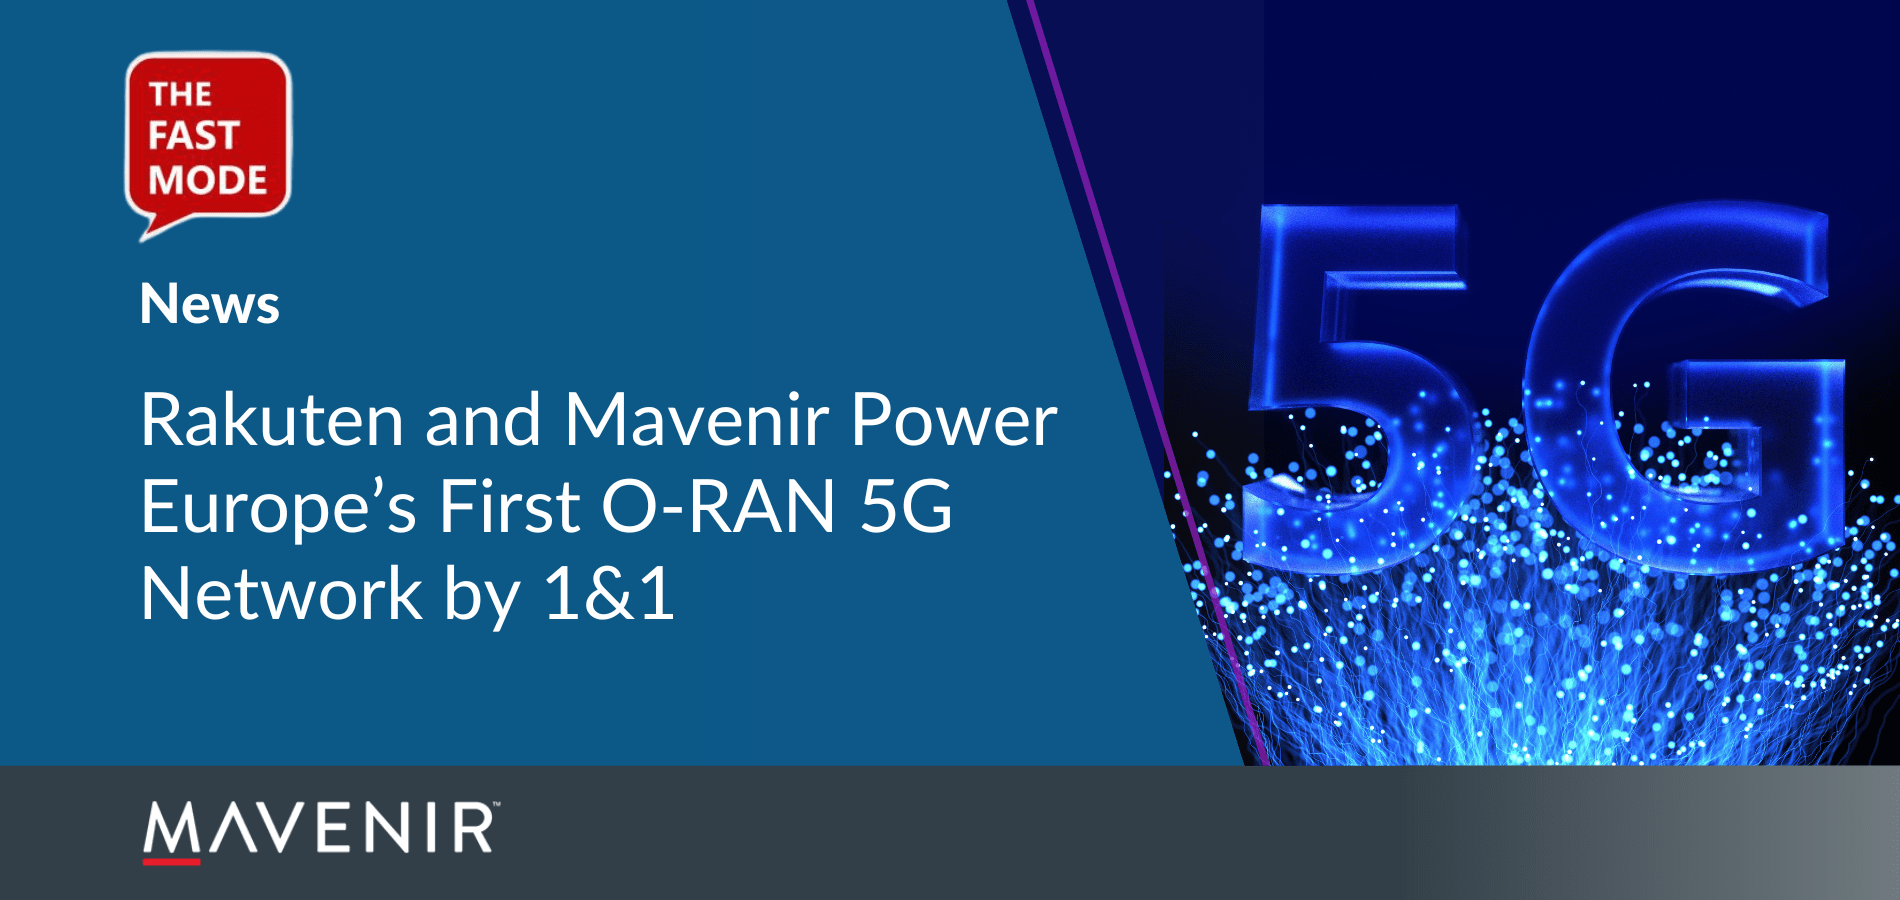 Rakuten and Mavenir Power Europe’s First O-RAN 5G Network by 1&1